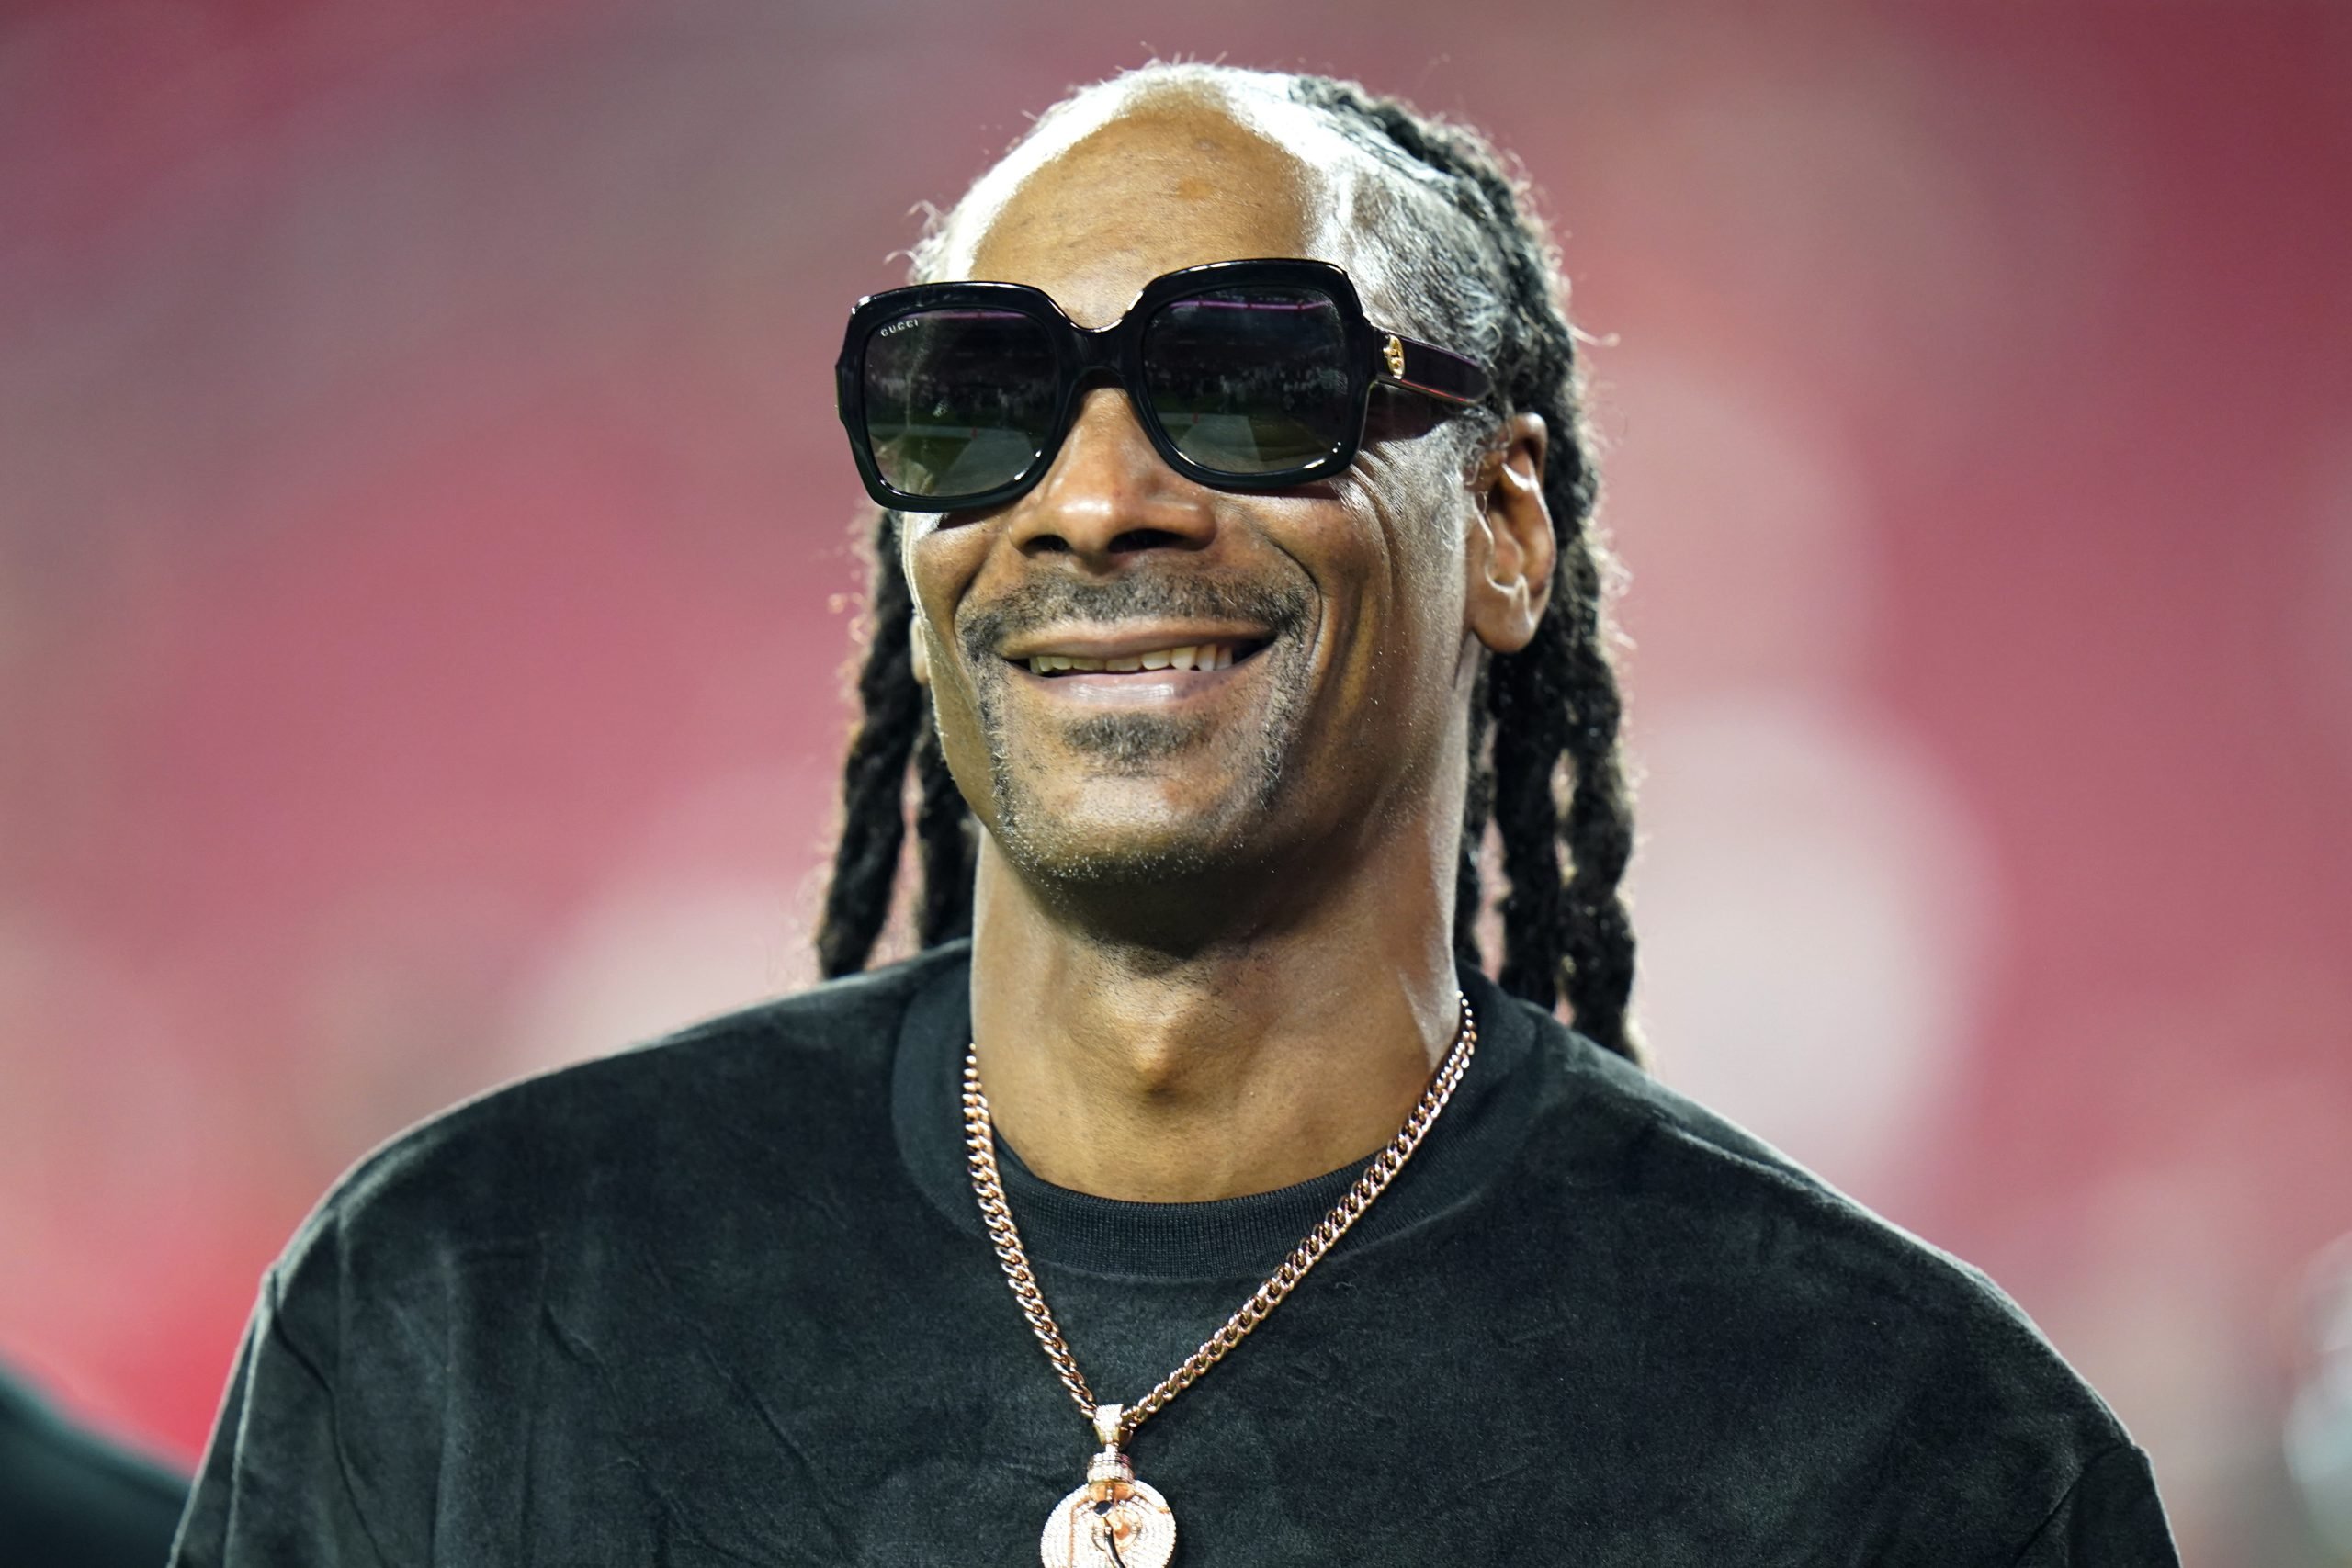  Rapperul Snoop Dogg, acuzat de viol la Los Angeles